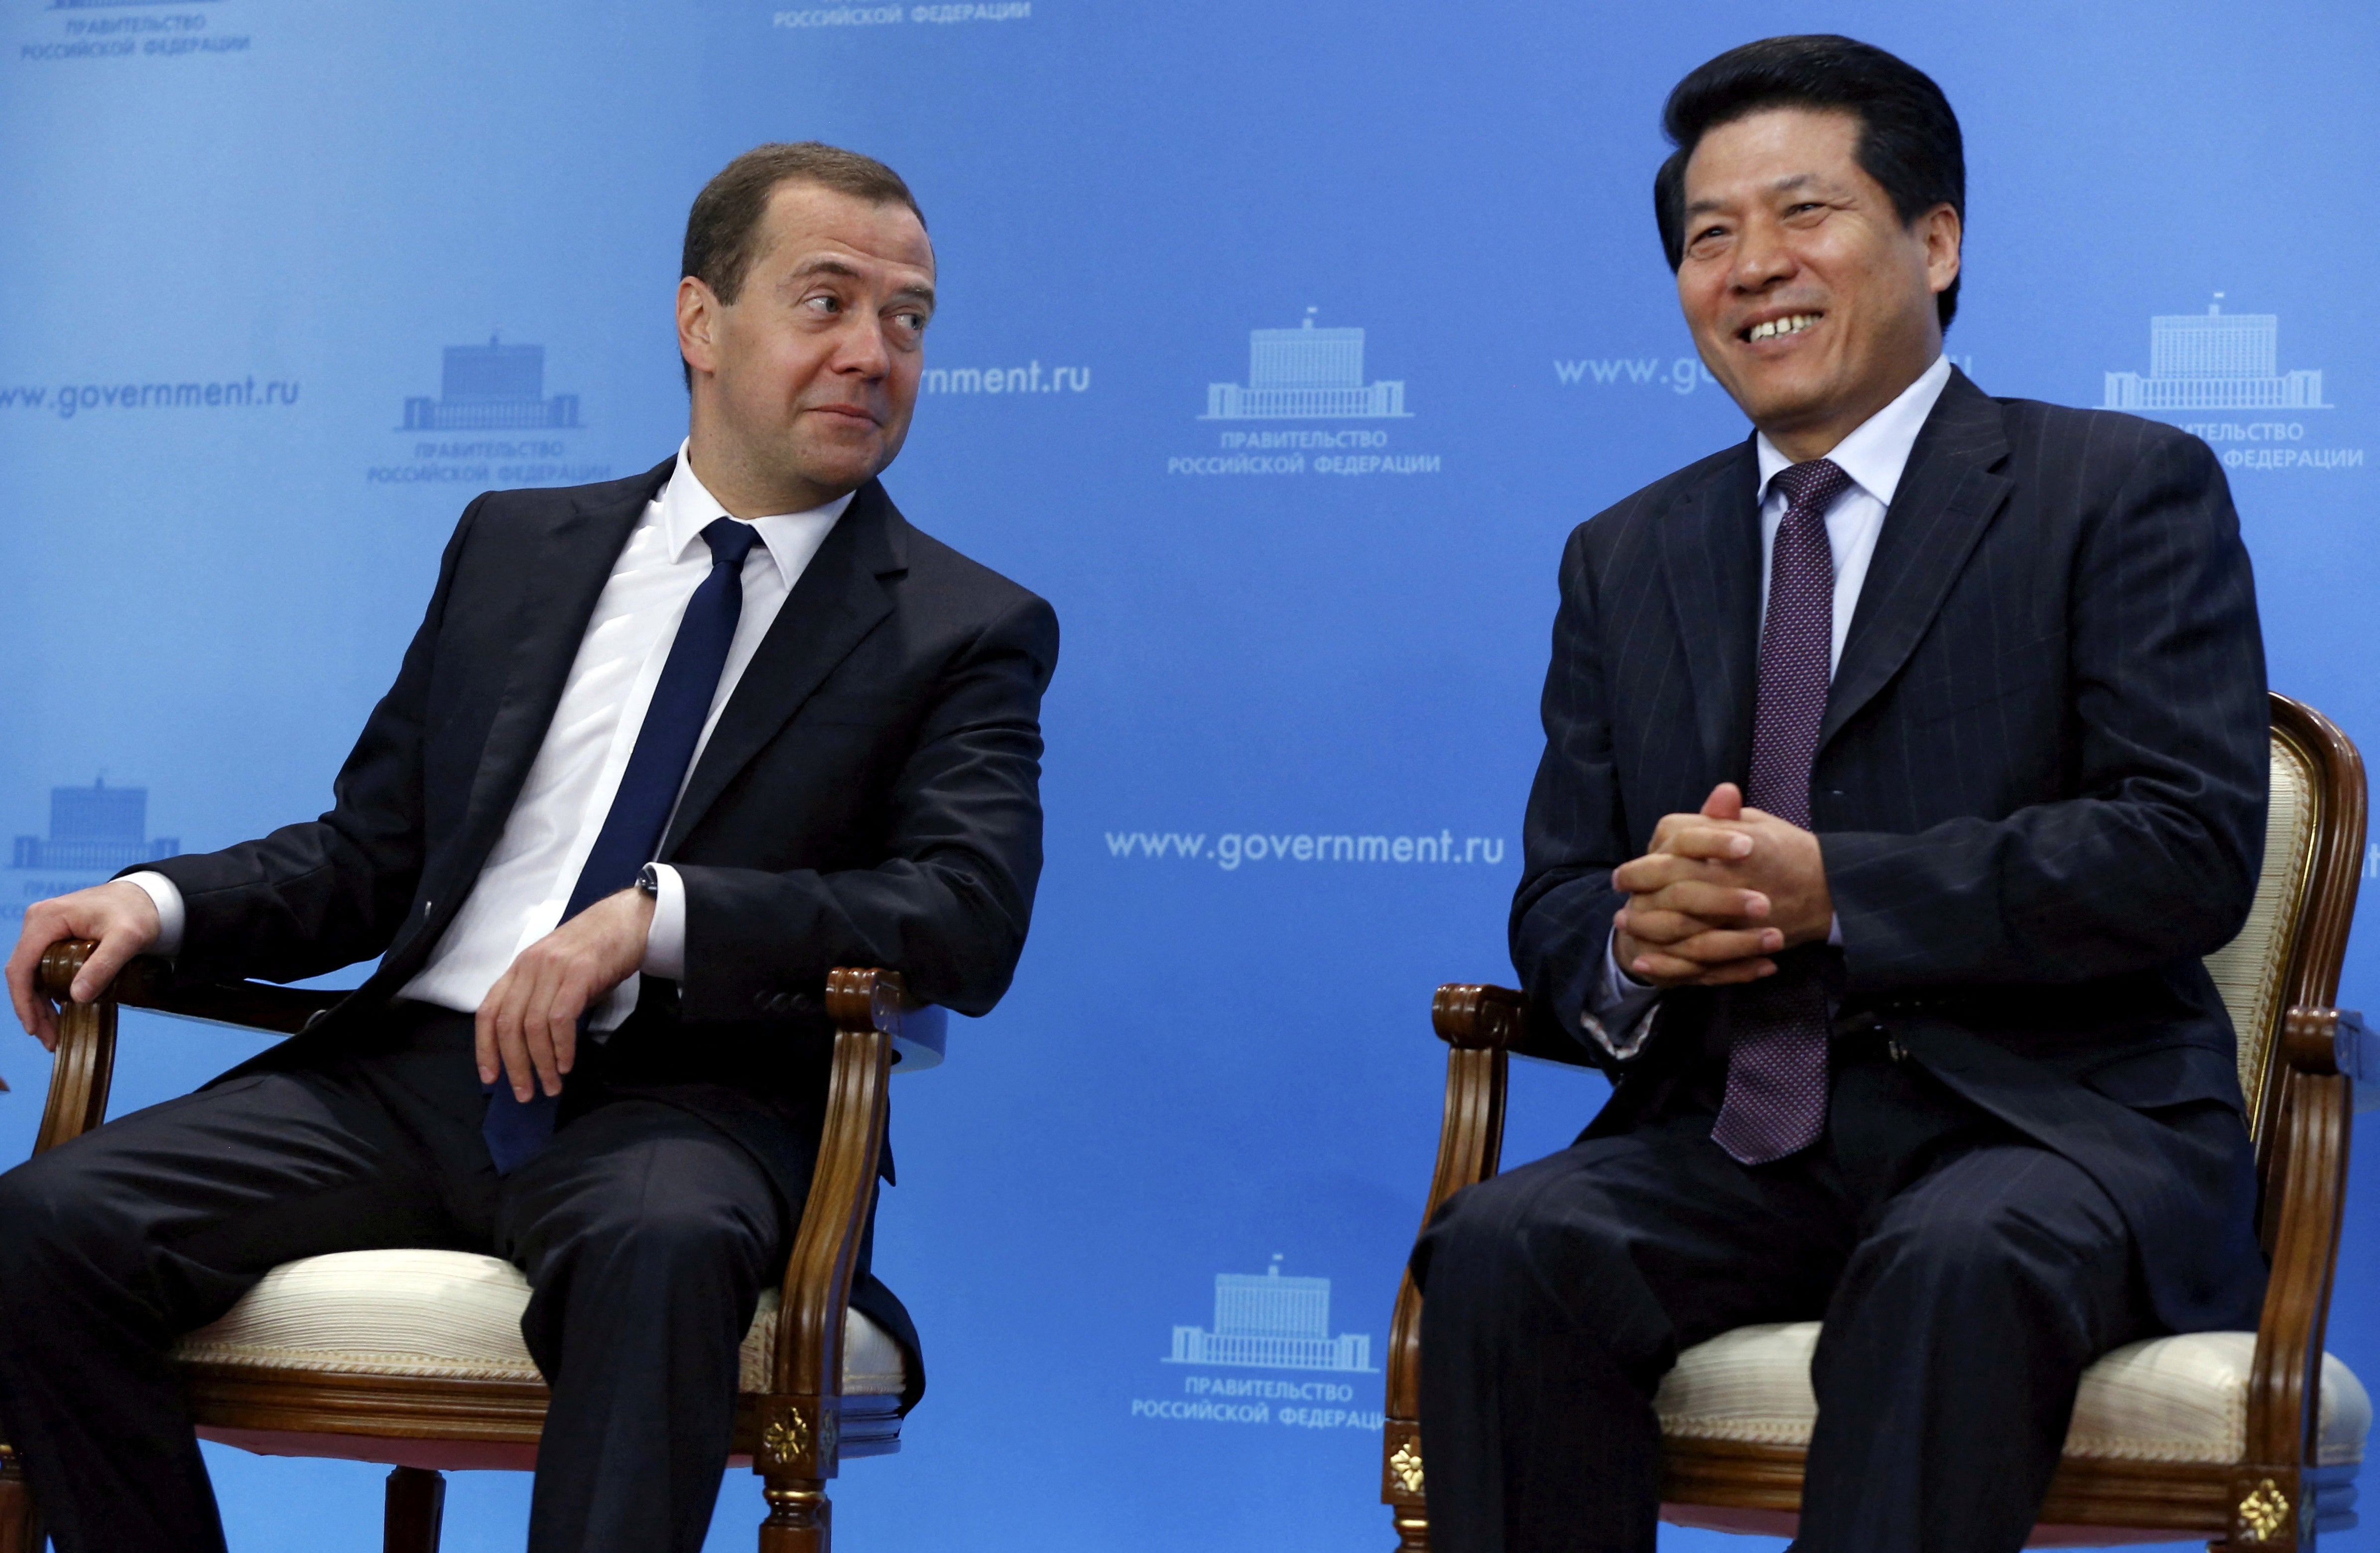 Enviado chino se dirige a Rusia después de misión de “paz” en Ucrania: “en gran medida egoísta”